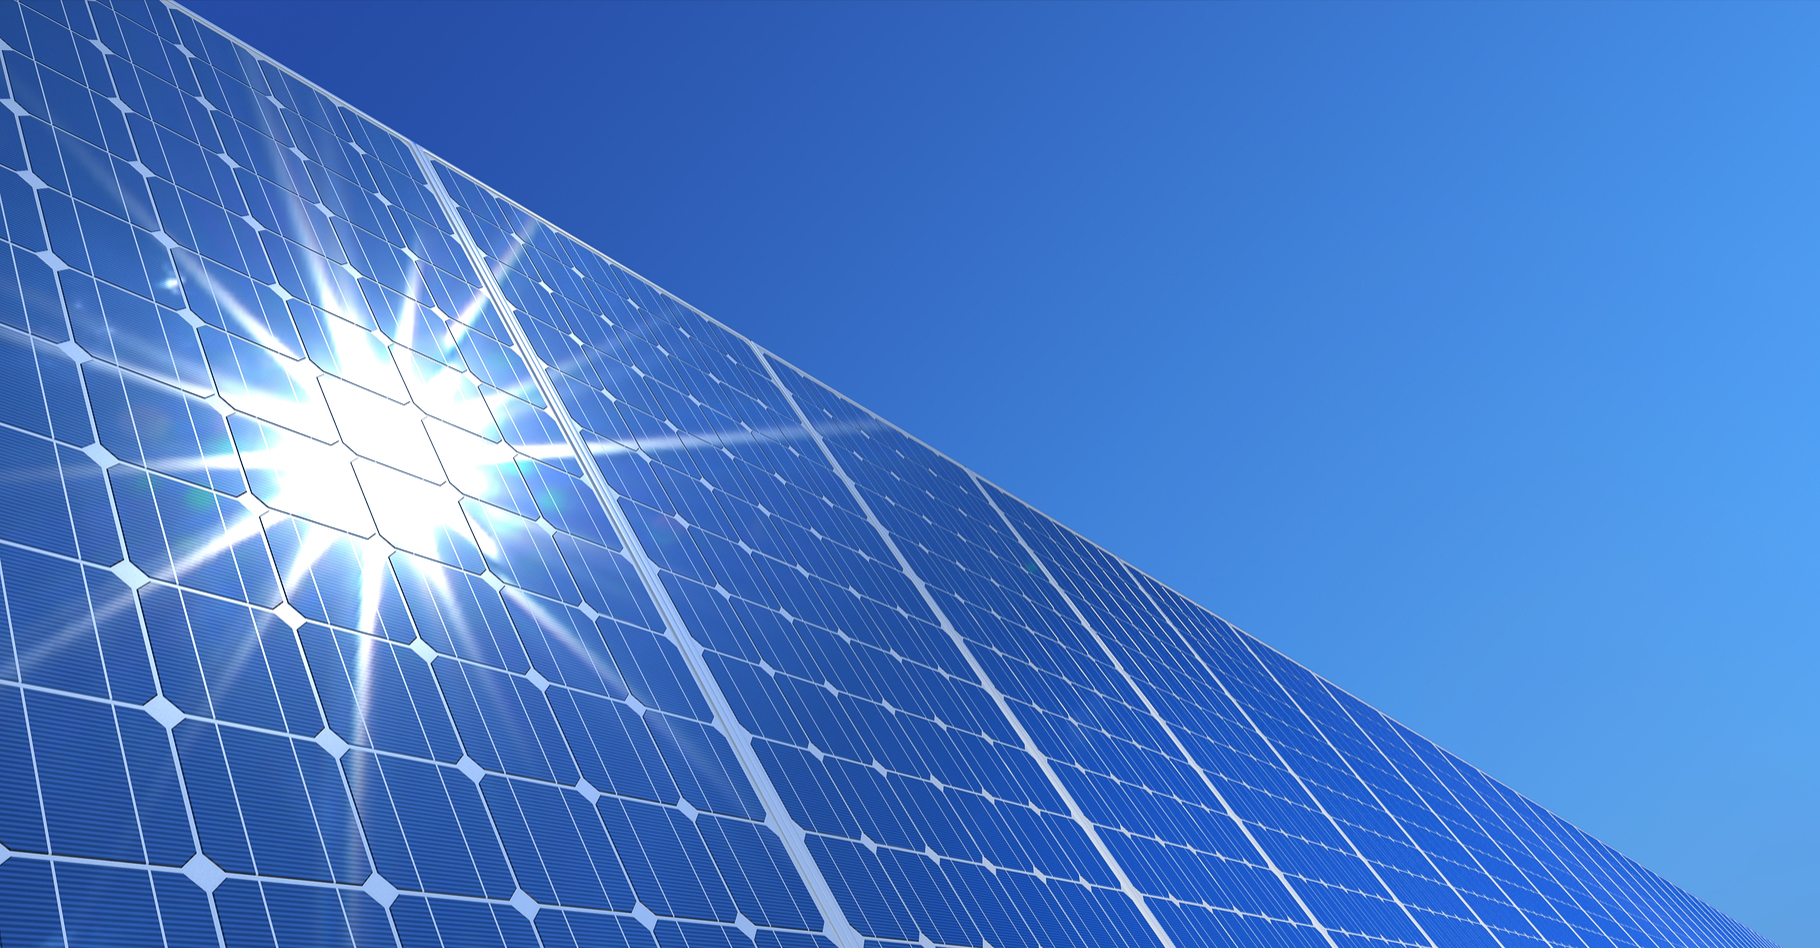 Le fonctionnement des panneaux solaires photovoltaïques repose sur l’effet photoélectrique. © koya979, Shutterstock